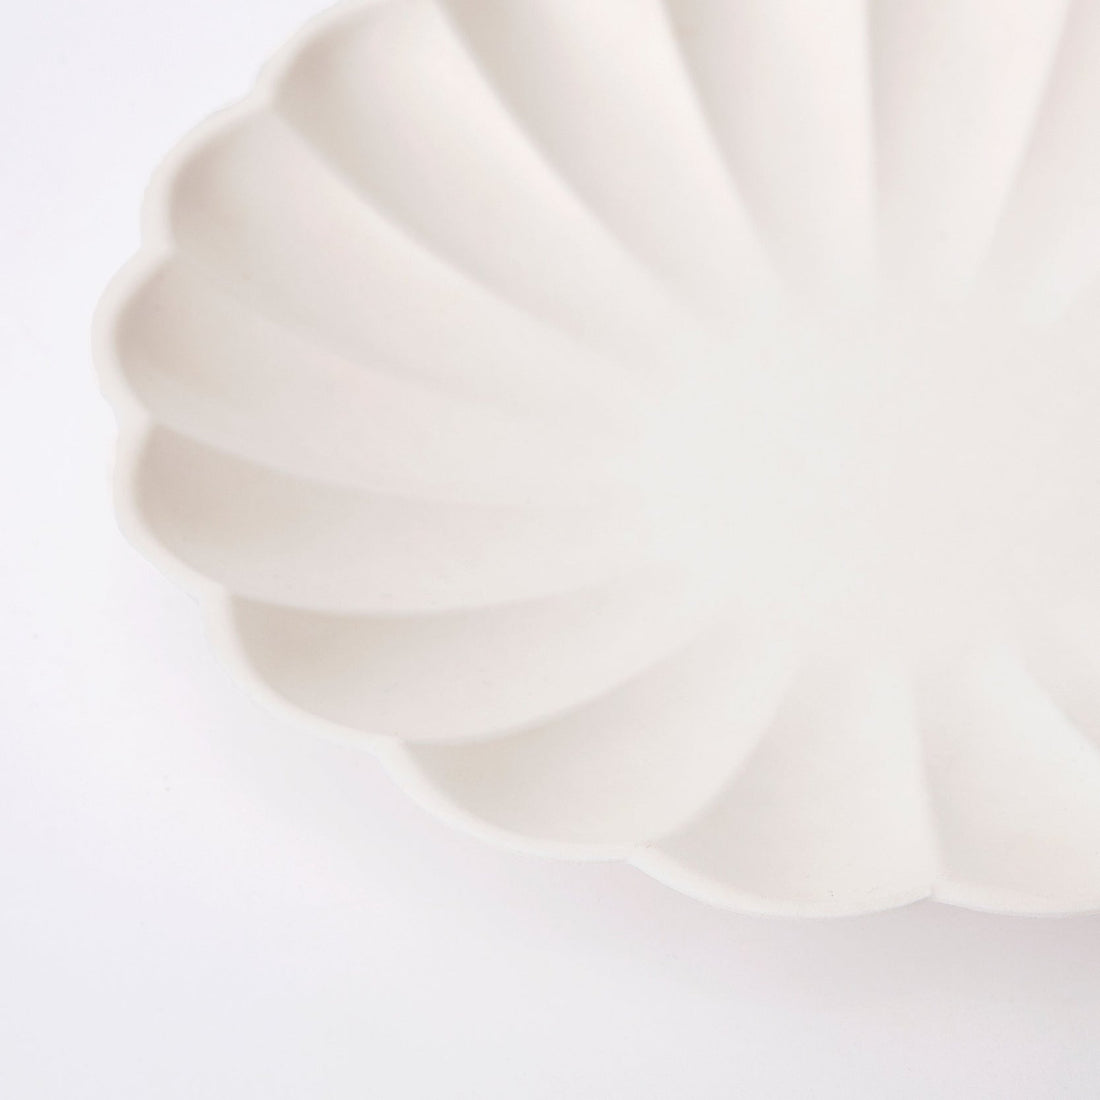 A Meri Meri cream eco plate with a scalloped edge.